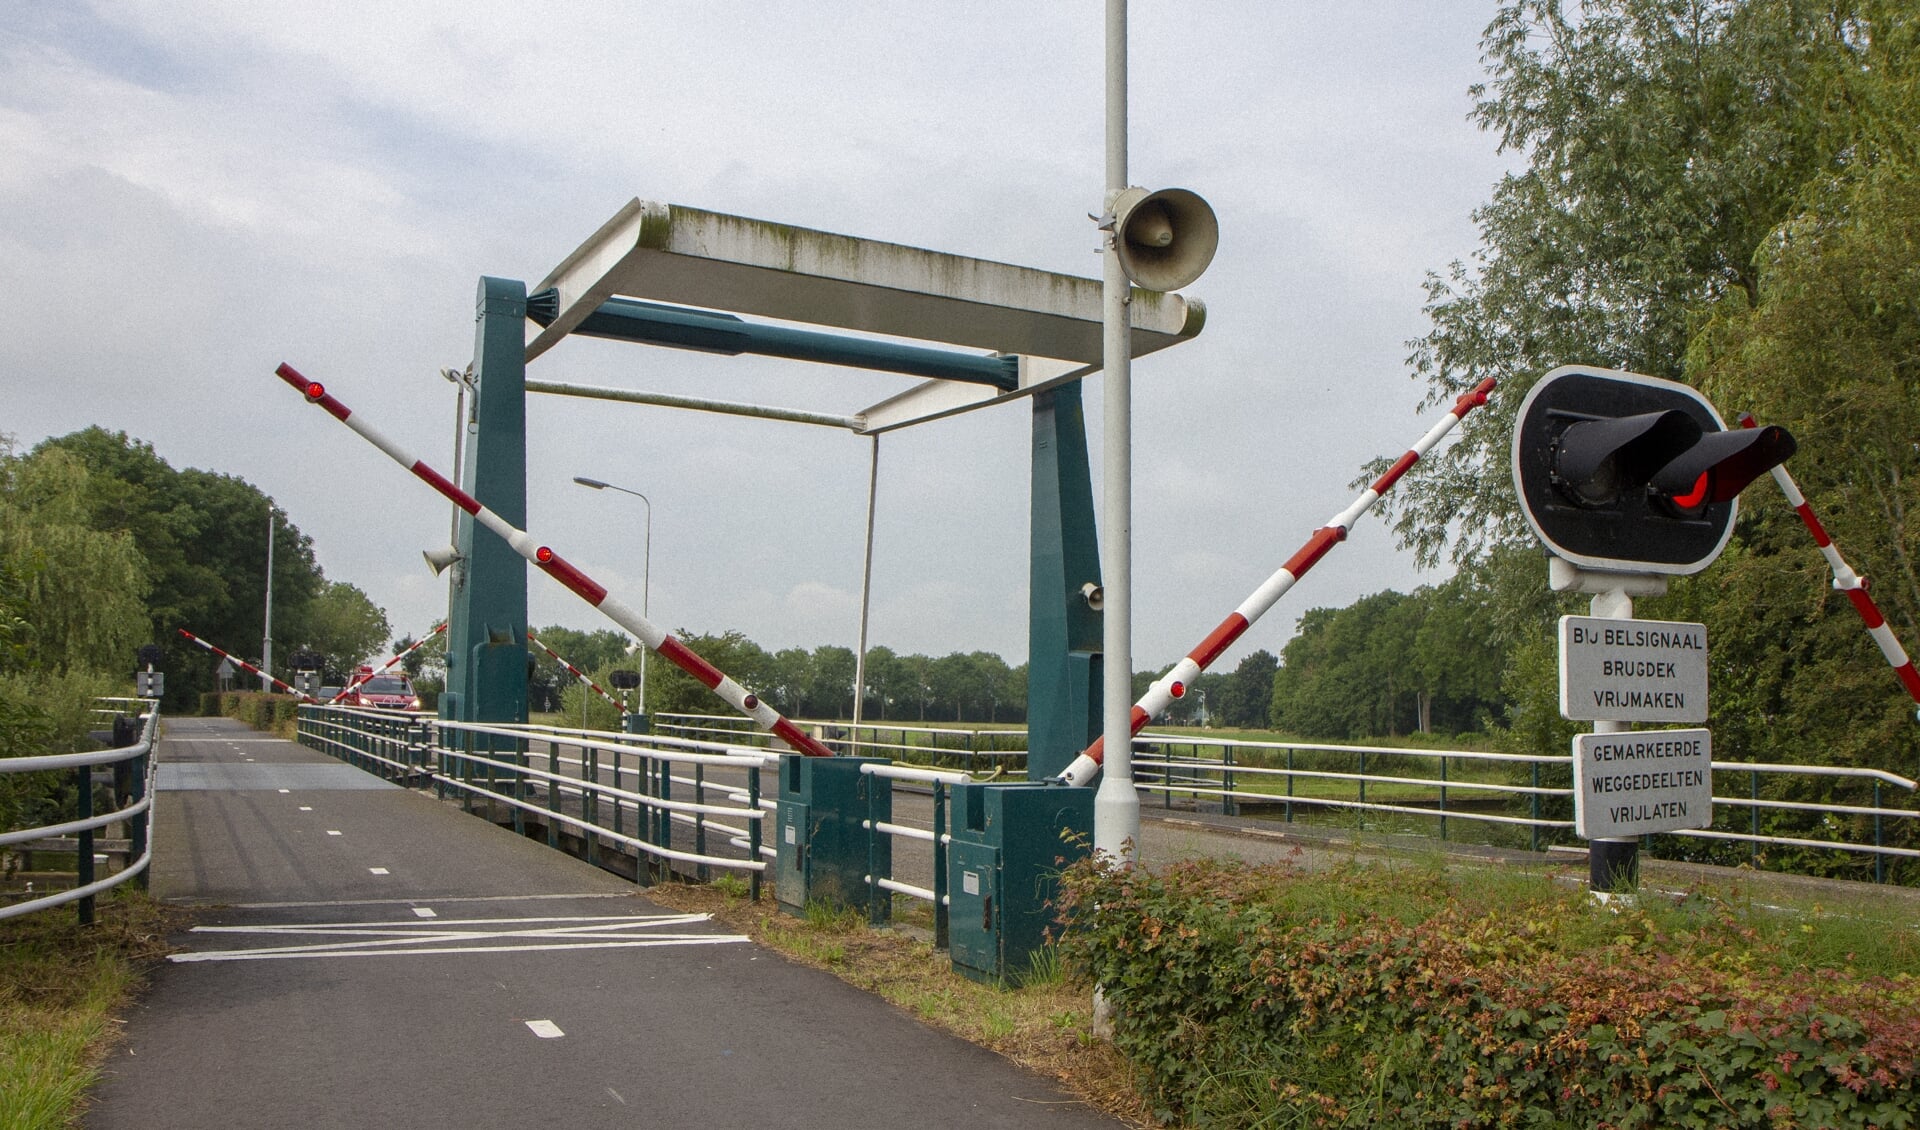 De brug bij Eastermar ligt op de fietsroute rond de Burgumermar, zaterdag 4 september.